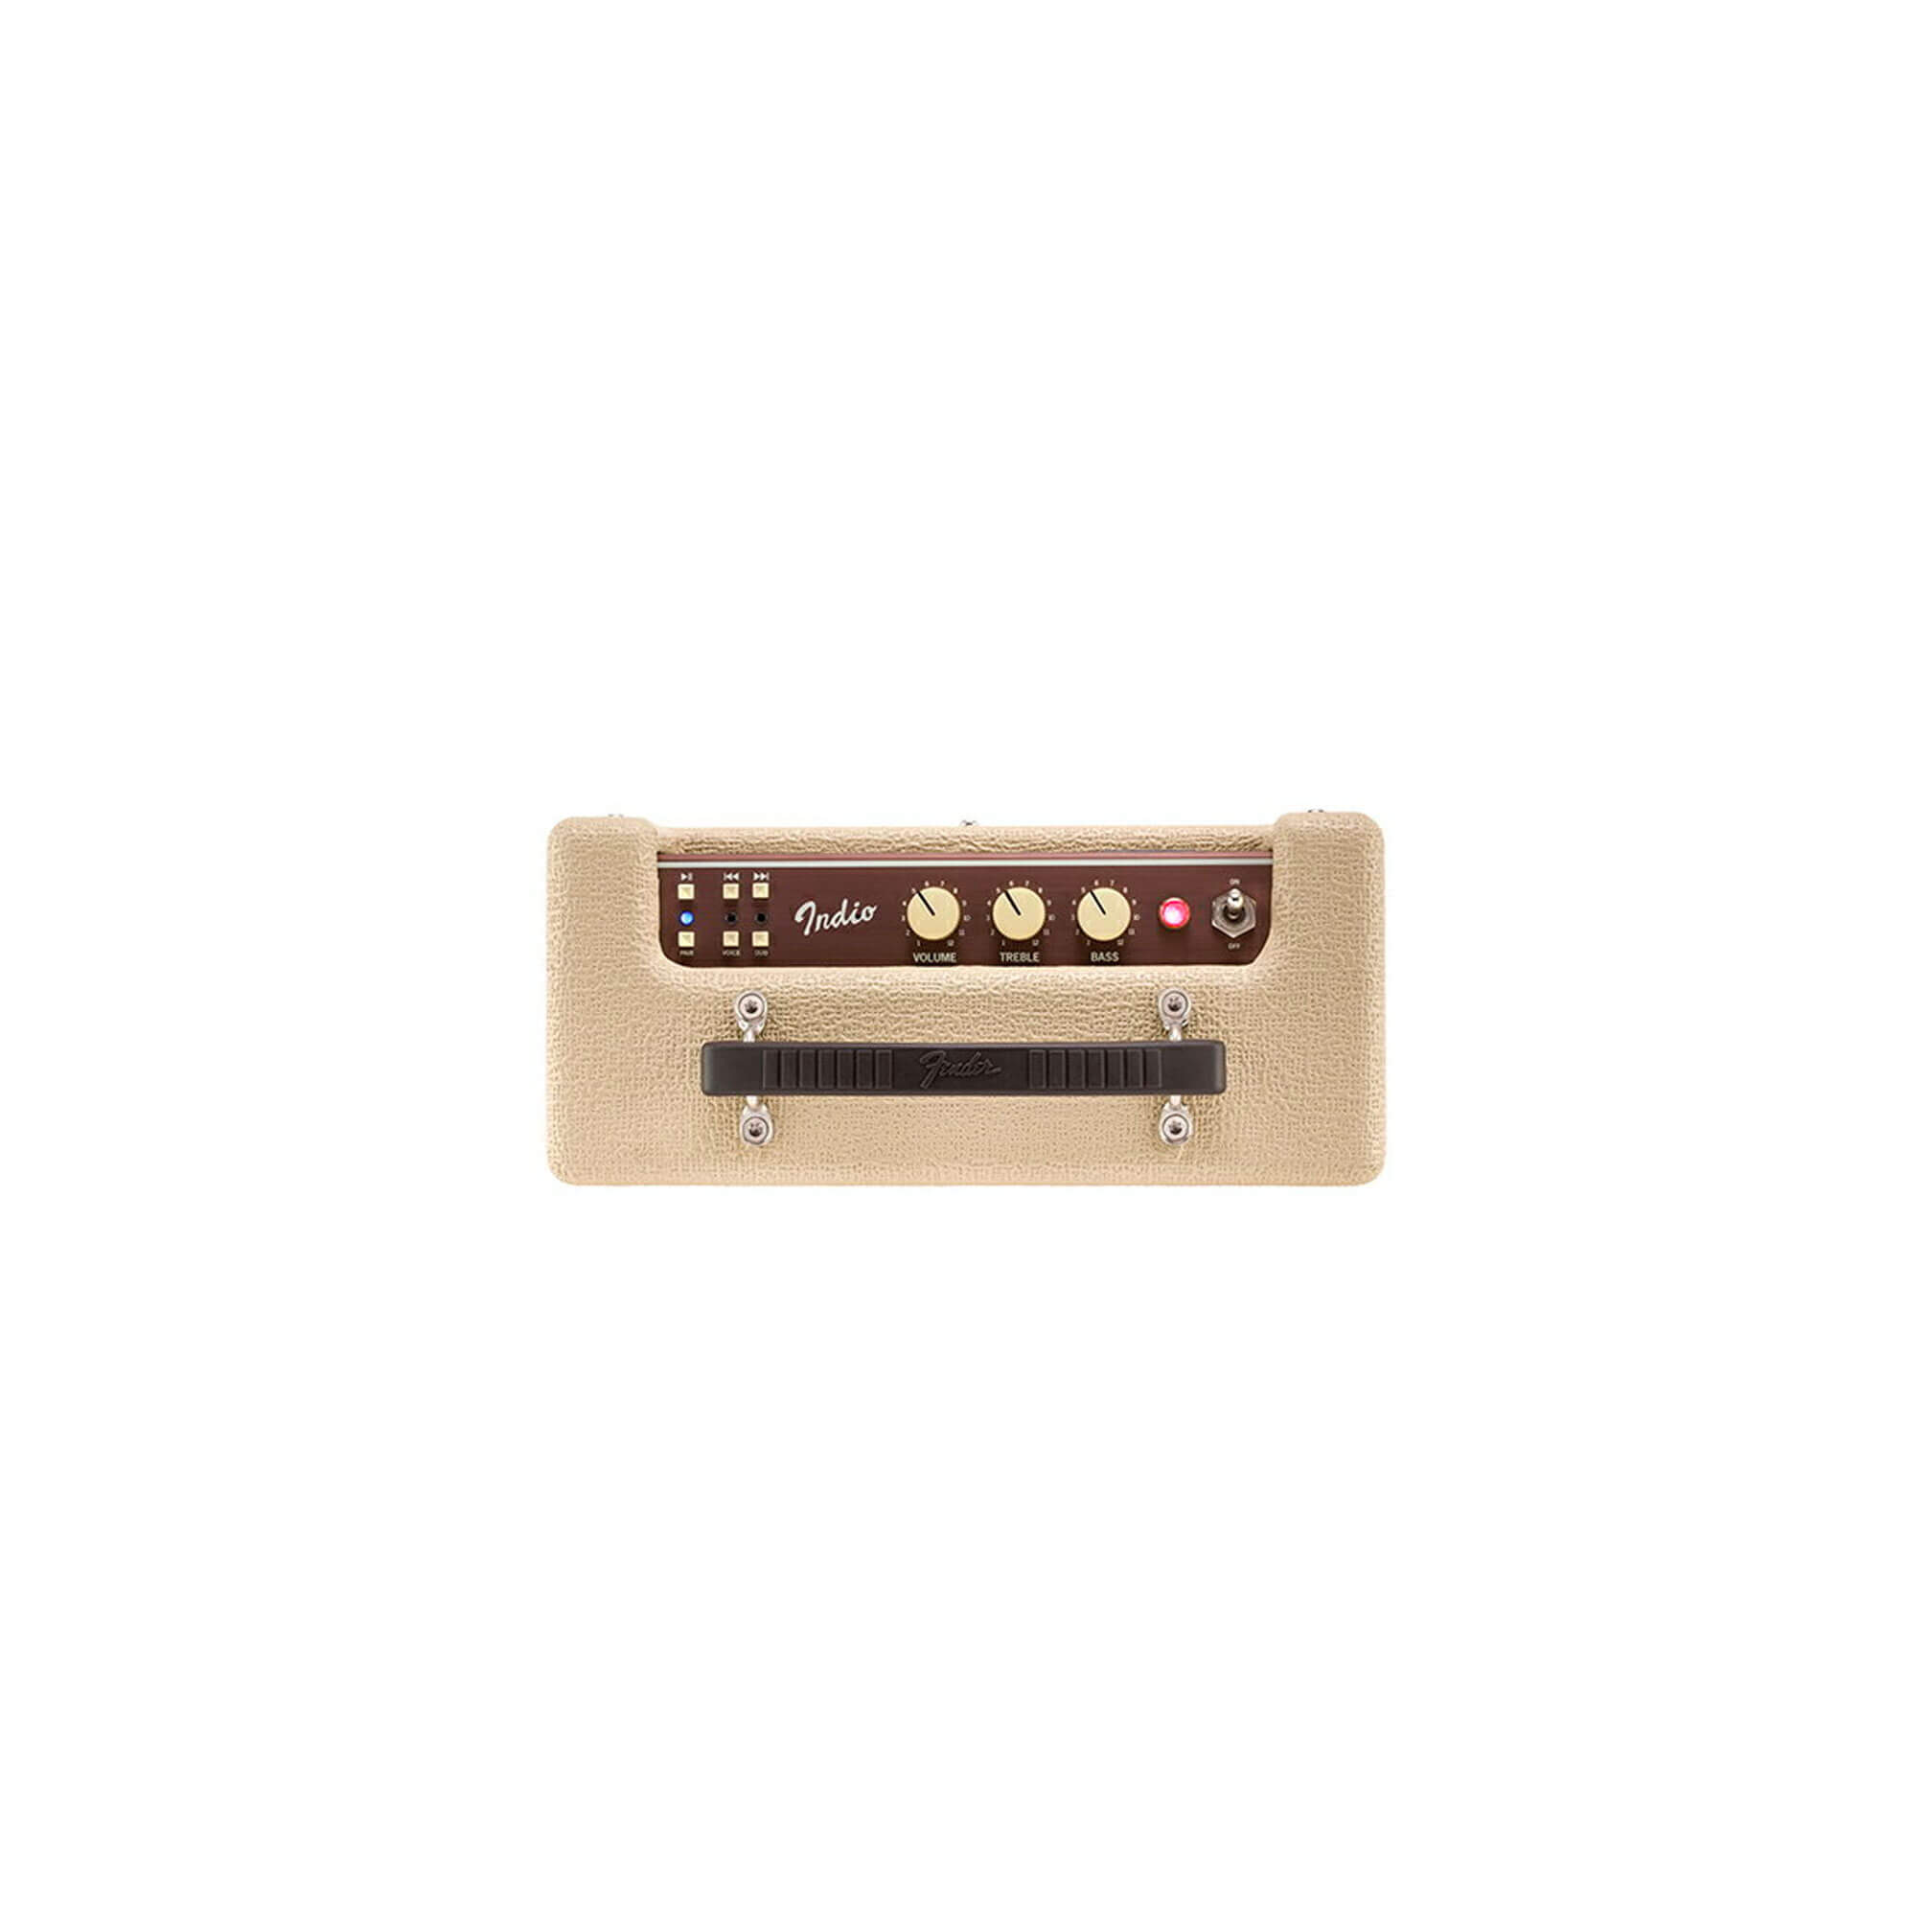 Fender Indio Bluetooth Speaker Blonde - Urban Gadgets PH